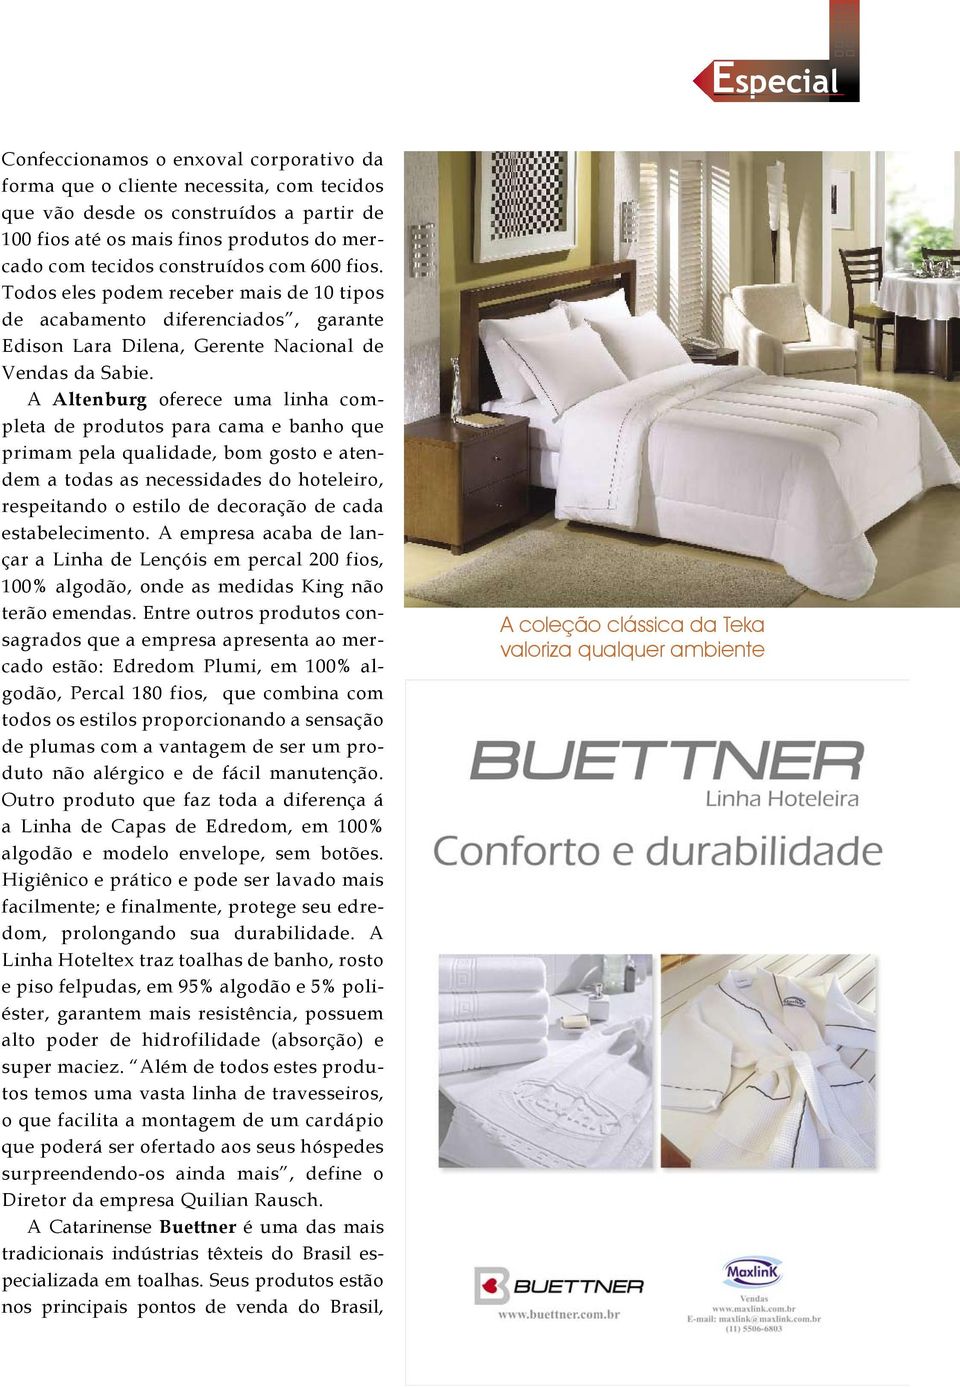 A Altenburg oferece uma linha completa de produtos para cama e banho que primam pela qualidade, bom gosto e atendem a todas as necessidades do hoteleiro, respeitando o estilo de decoração de cada